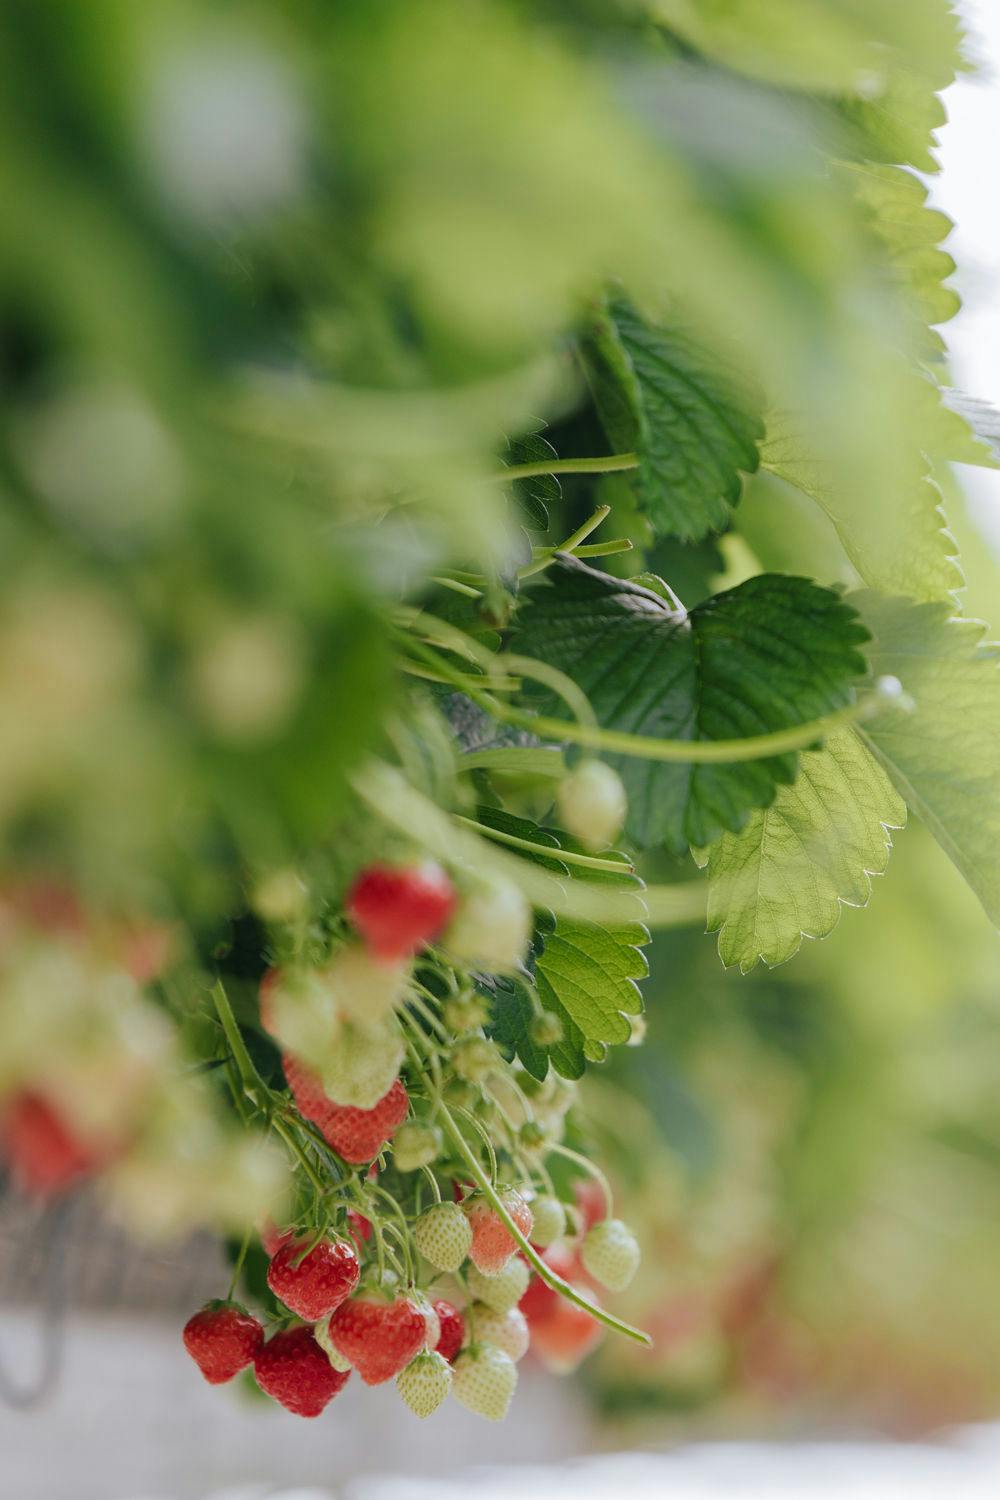 Duurzame aardbeien uit de regio Gelderland